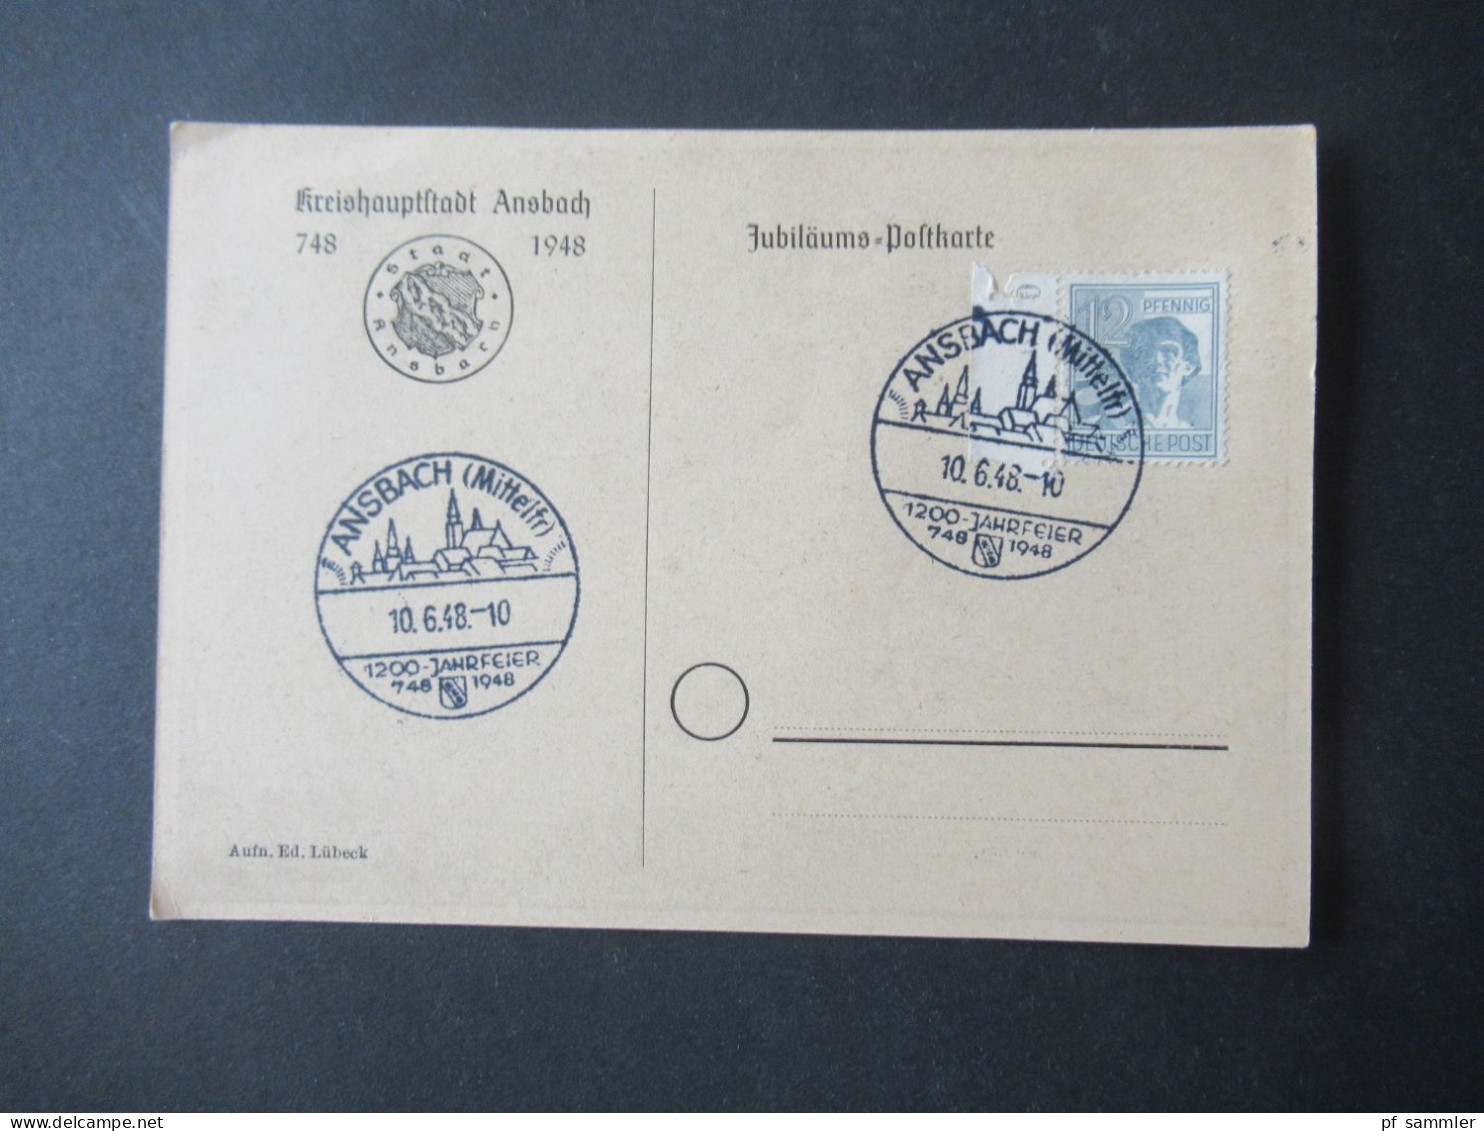 Kontrollrat 1948 PK Kreishauptstadt Ansbach Und Sonderstempel Ansbach (Mittelfr) 1200 Jahrfeier 748 - 1948 - Lettres & Documents